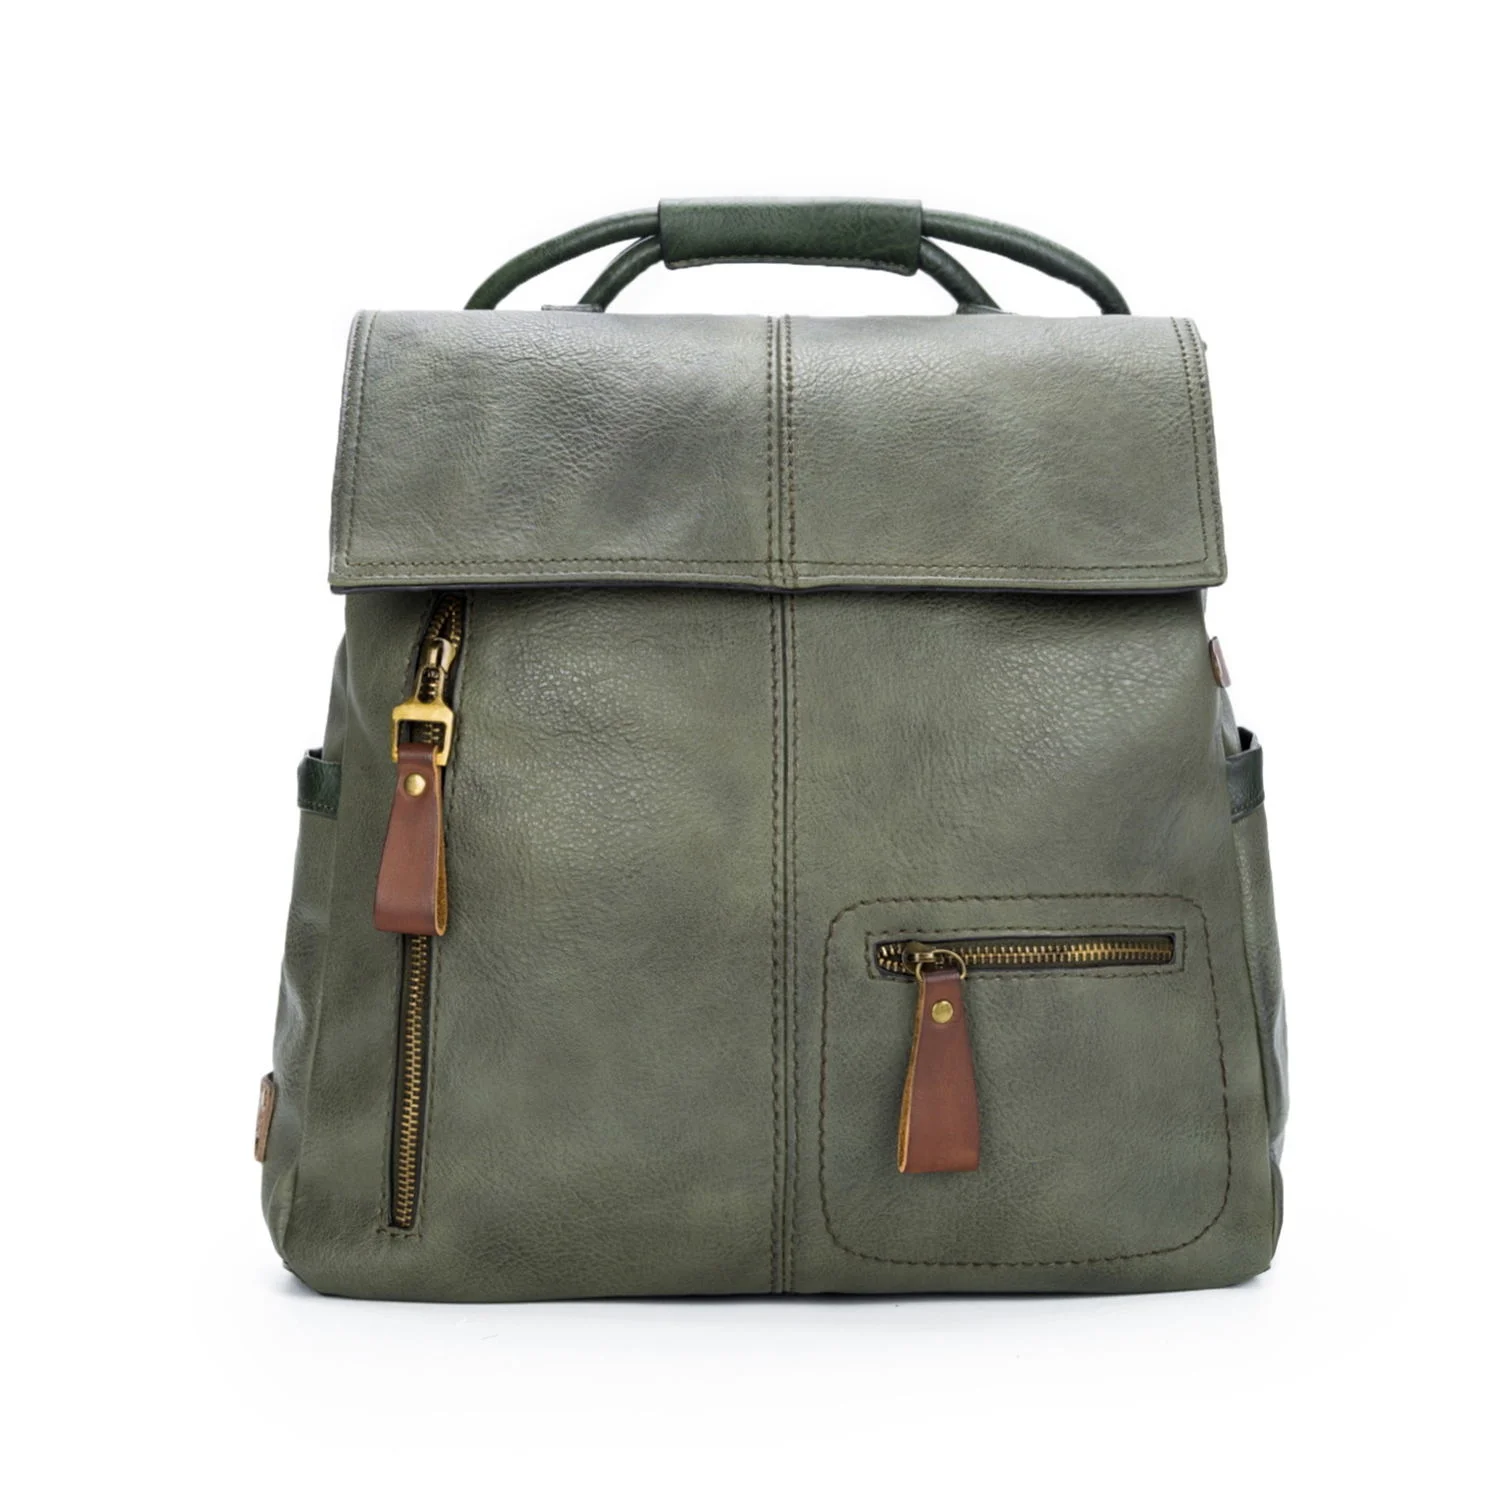 

Fashion Forward Wilslat Femal Backpack Purse Leather Anti-theft Casual Shoulder Bag Mochilas Satchel Bolso